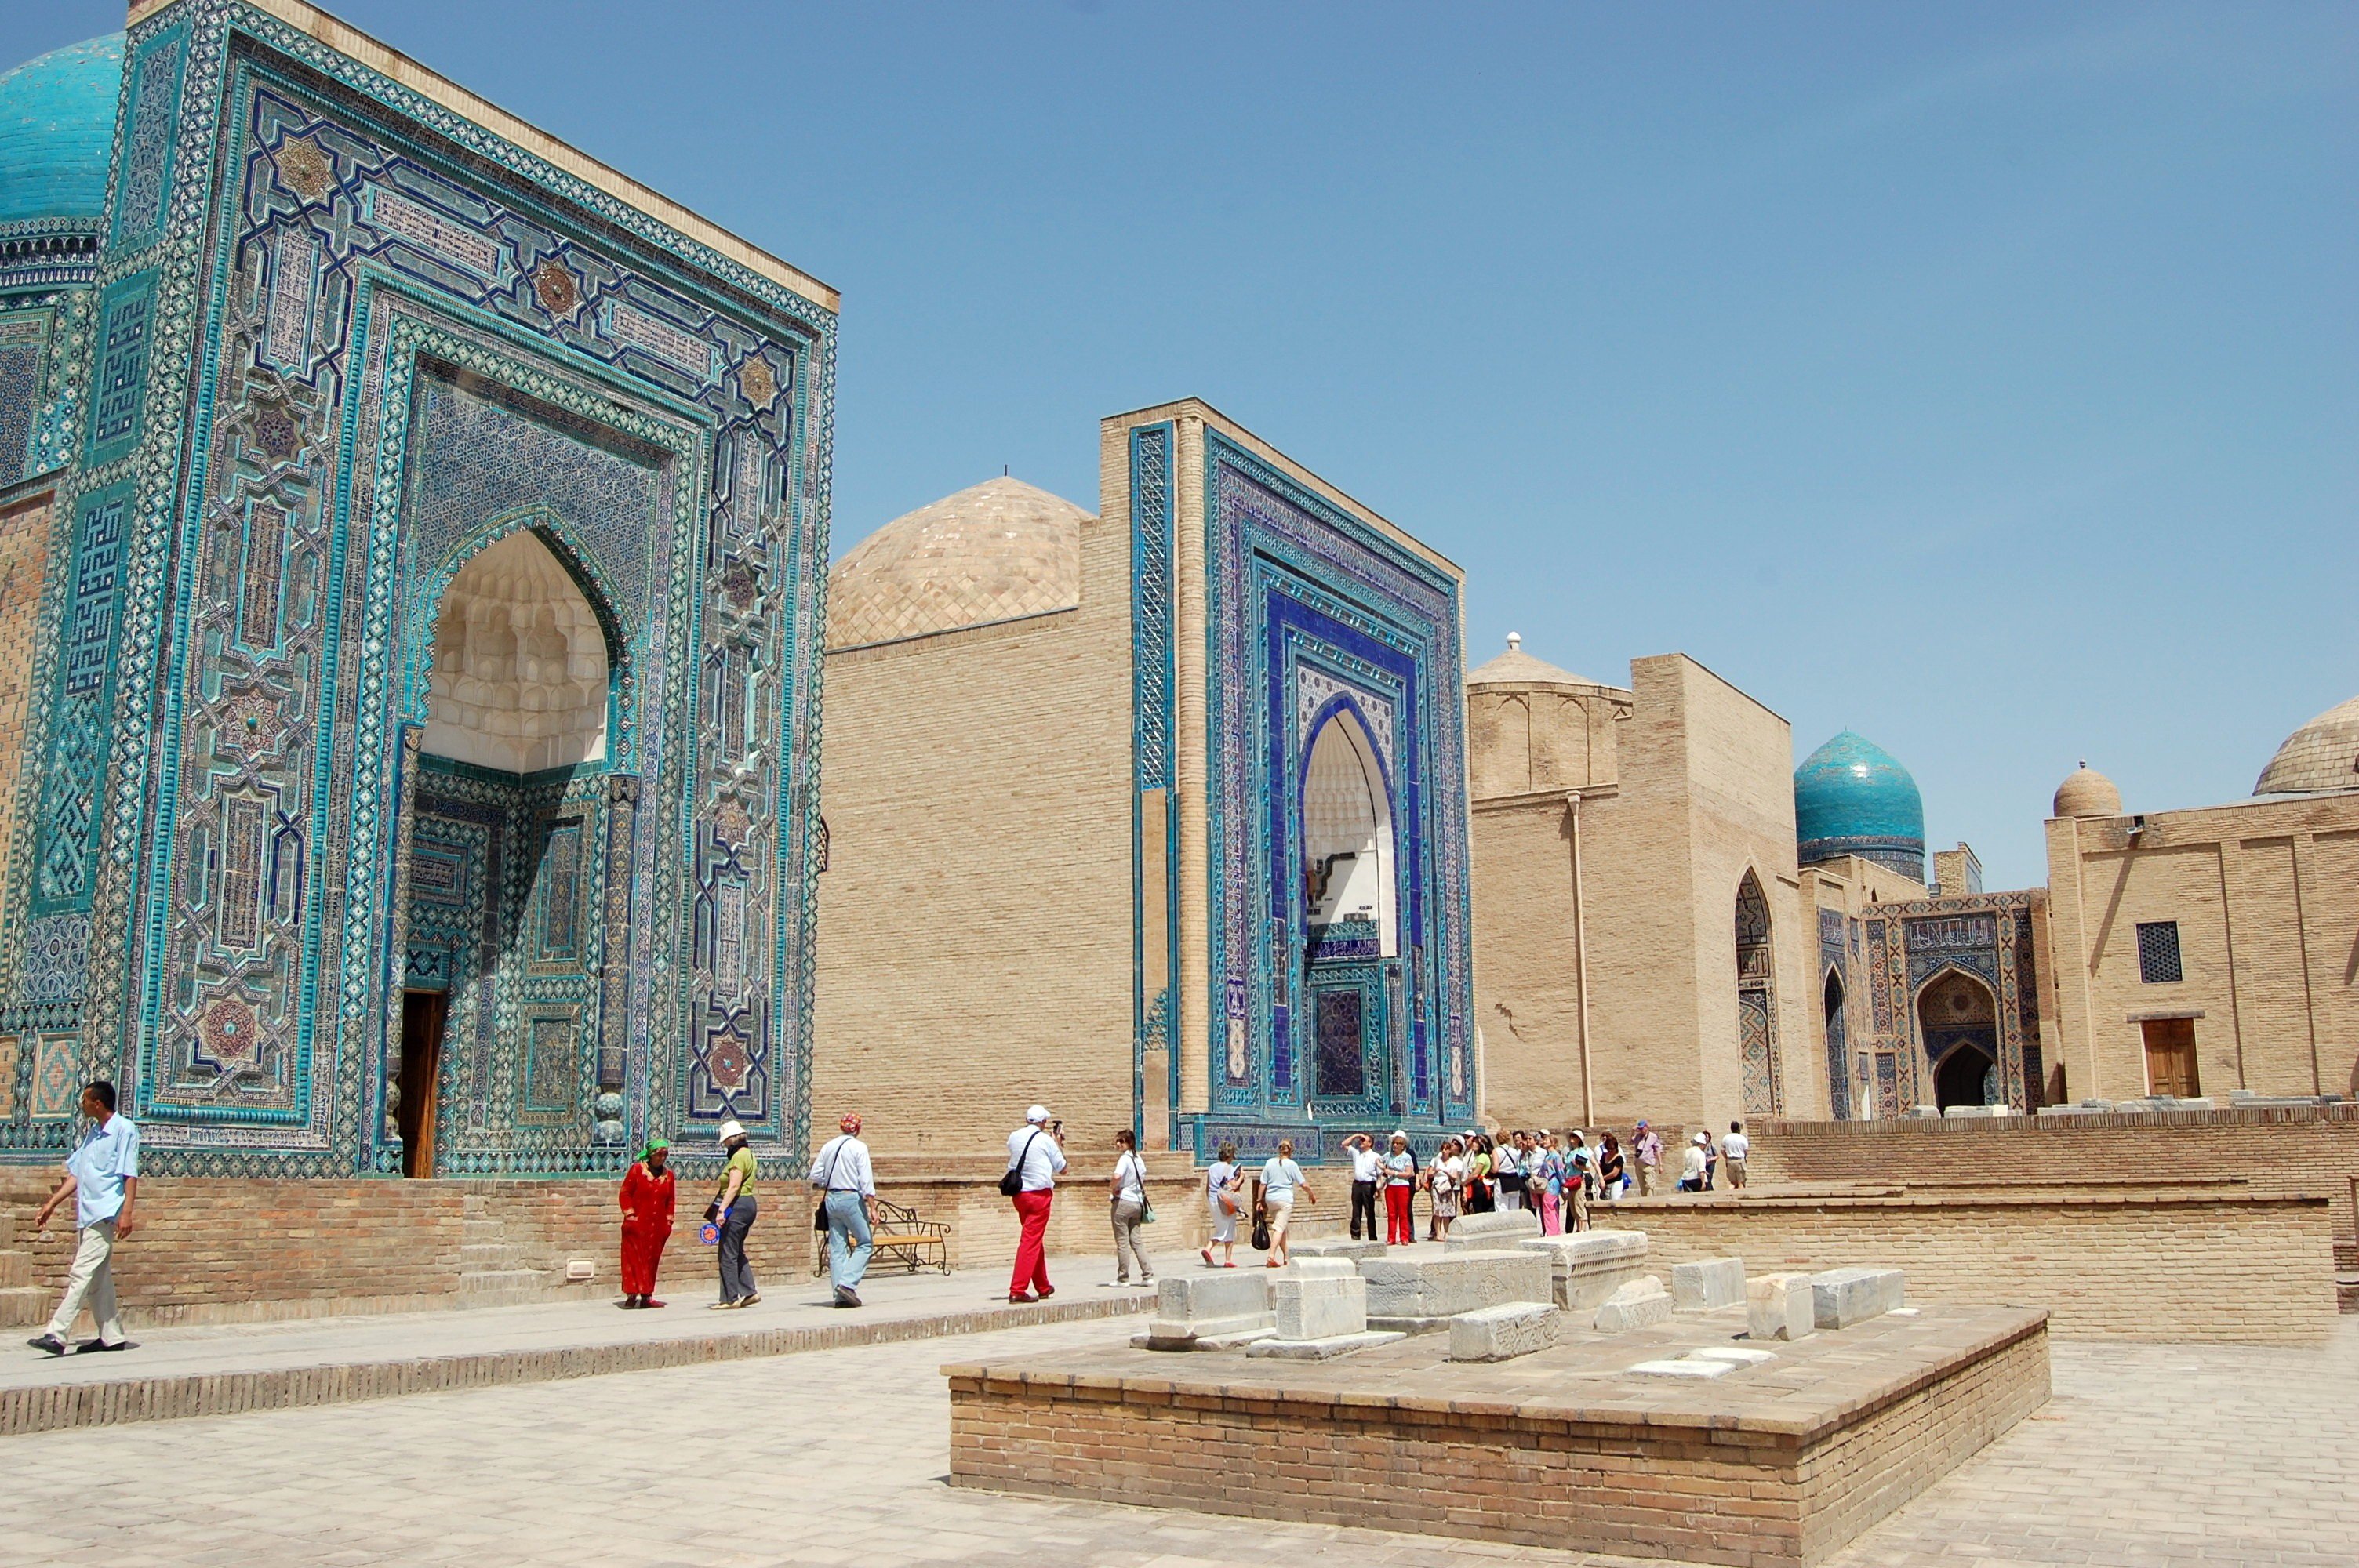 Mausolea in Samarkand